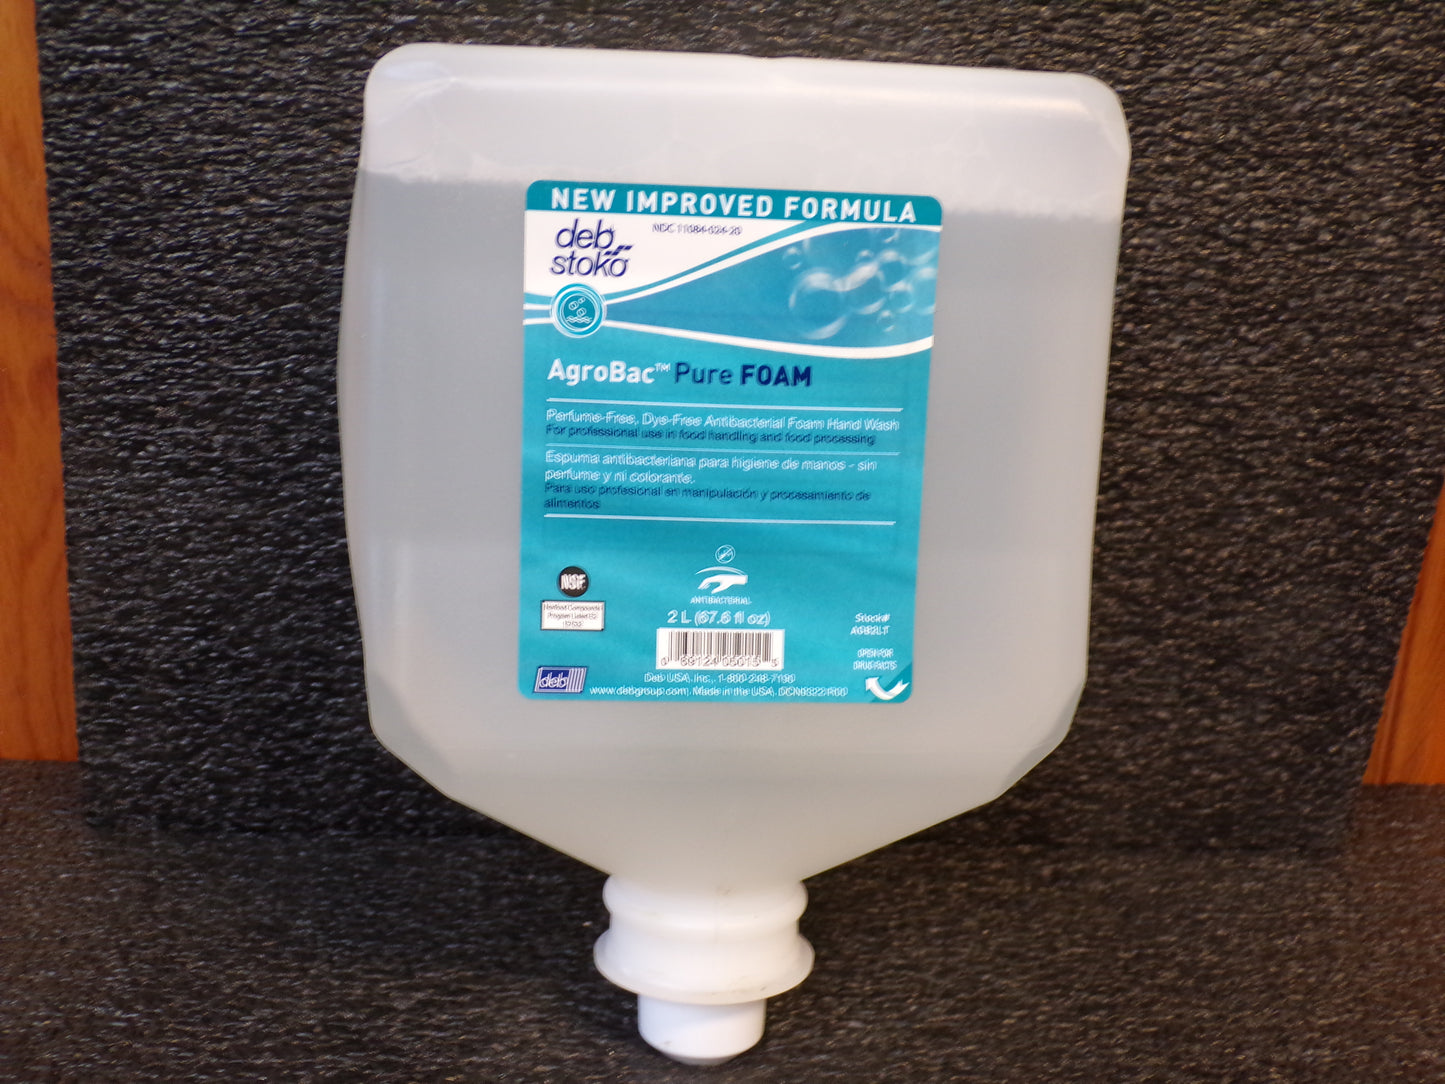 Deb Stoko Agrobac Foam Wash, 2 liter, 67.6 oz. (CR00015-K02)